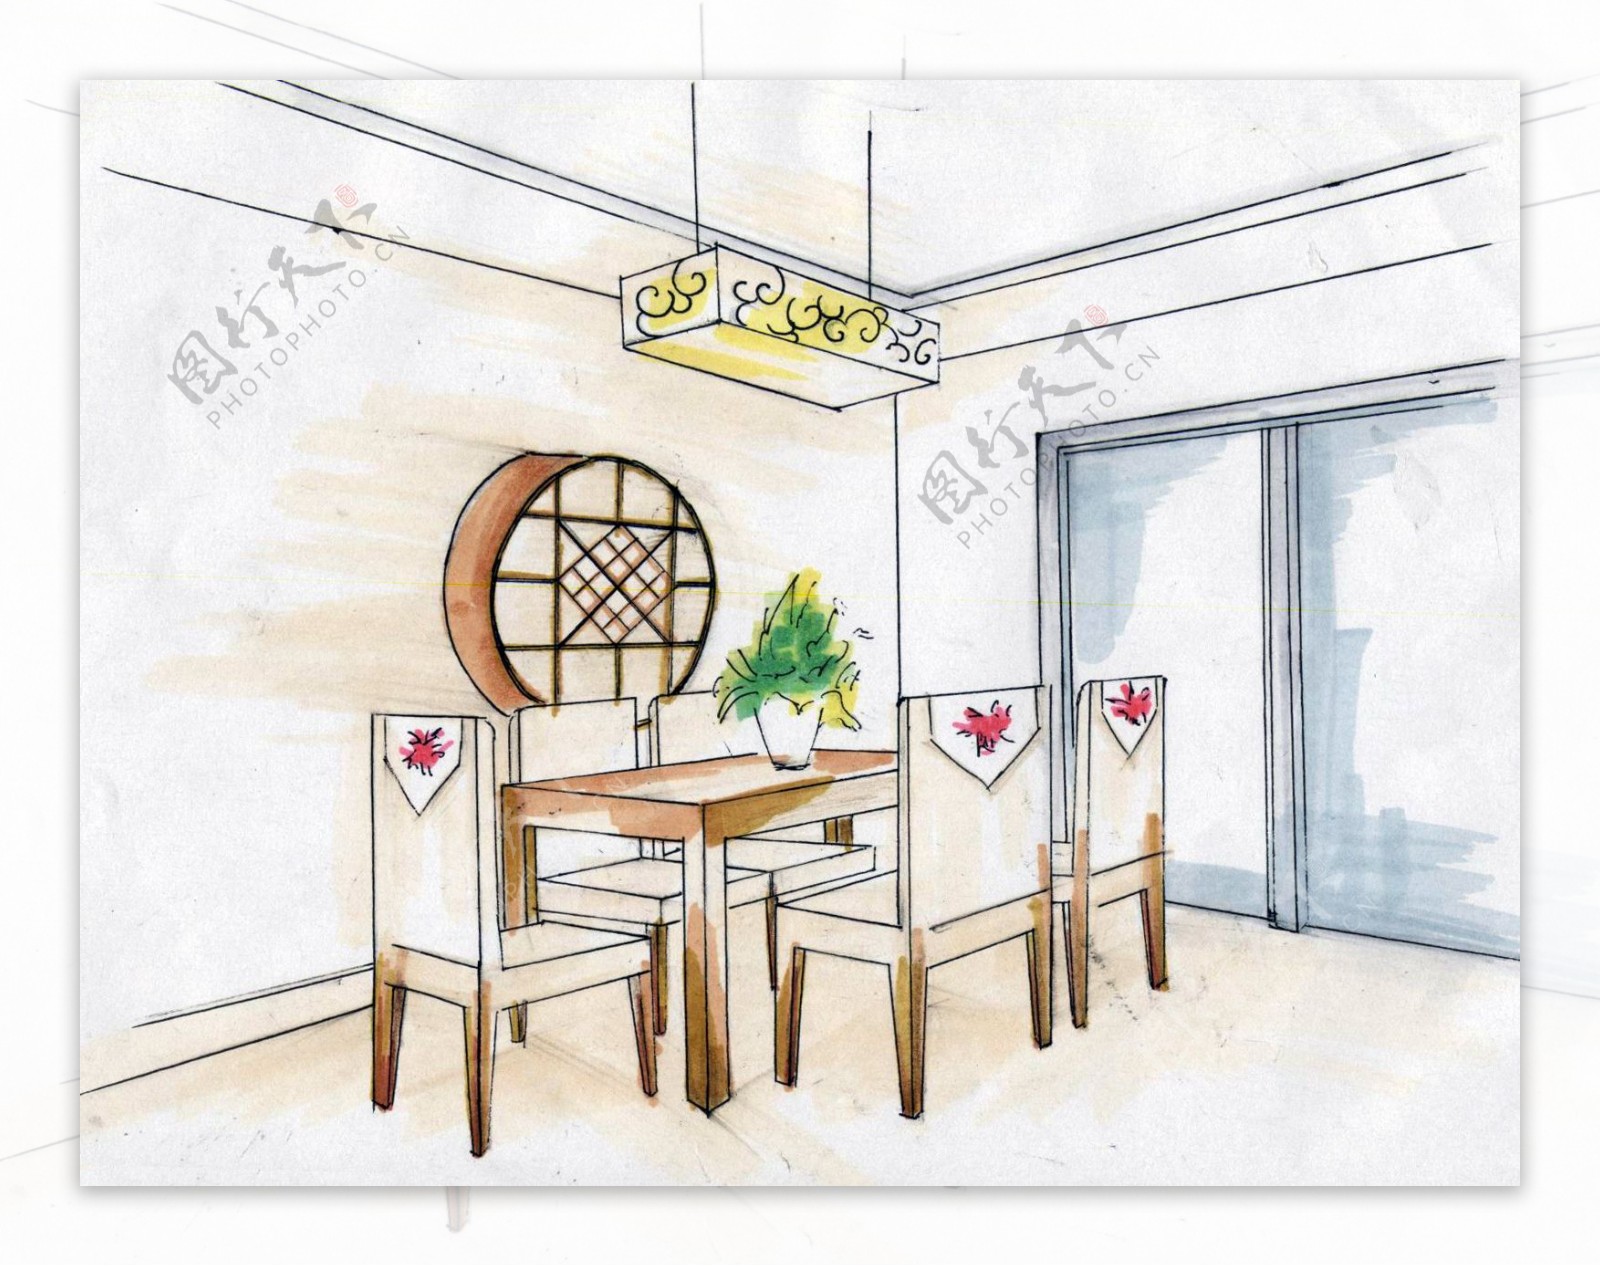 原速示范04|新中式风格工装餐厅线稿+上色过程展示【马克笔手绘】_哔哩哔哩_bilibili